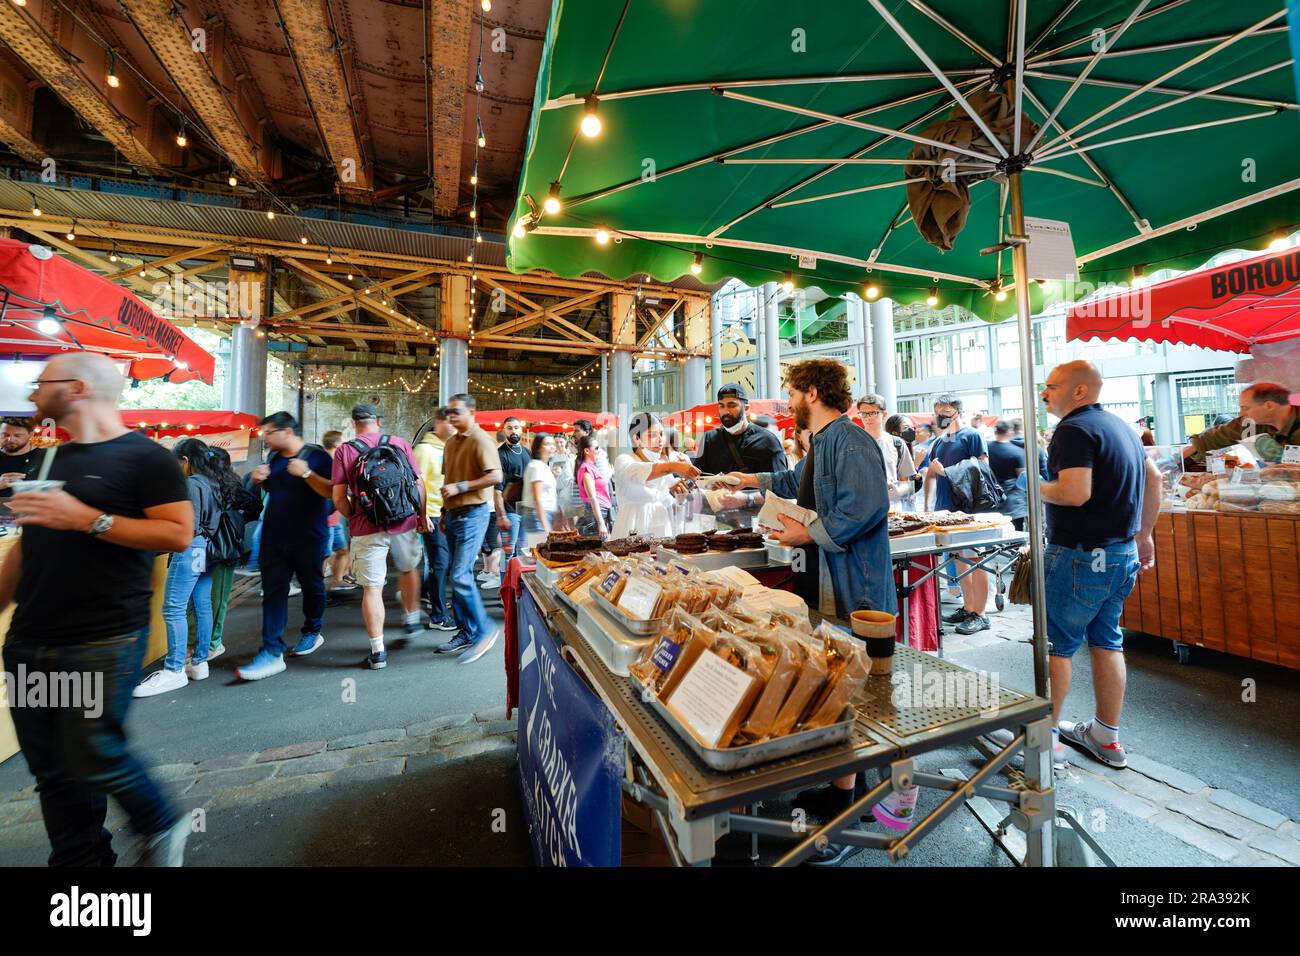 Borough Market ist ein lokaler Open-Air-Lebensmittelmarkt, eine Lebensmittelhalle mit grünen Lebensmittelgeschäften und frisch zubereiteten Mahlzeiten zum Mitnehmen. Top Touristenattraktion. Stockfoto